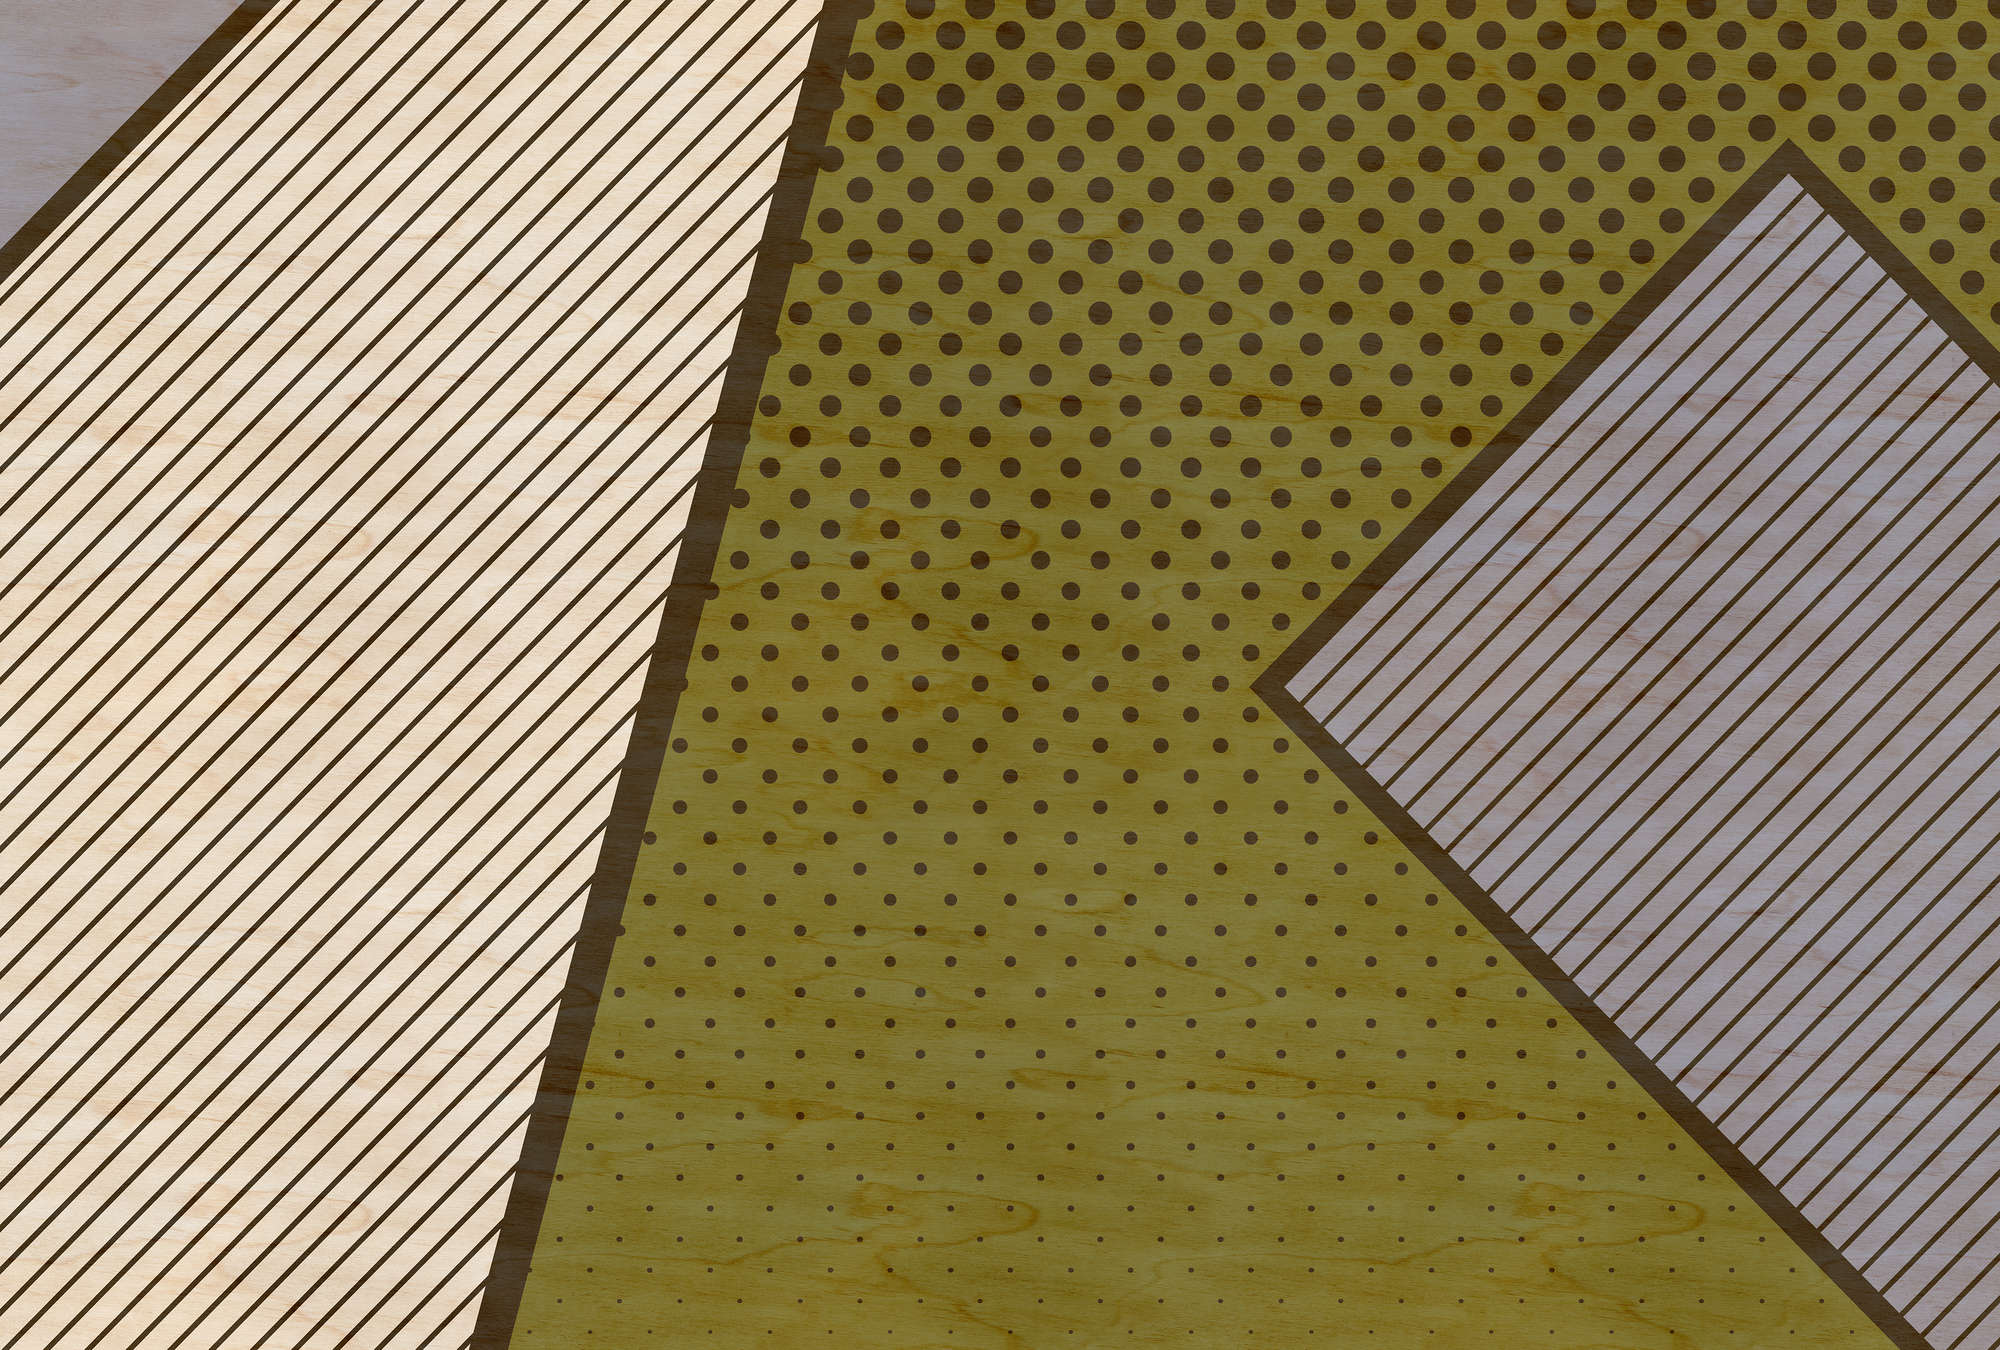             Bird gang 2 - papier peint, motif moderne style pop art - structure contreplaquée - beige, jaune | nacré intissé lisse
        